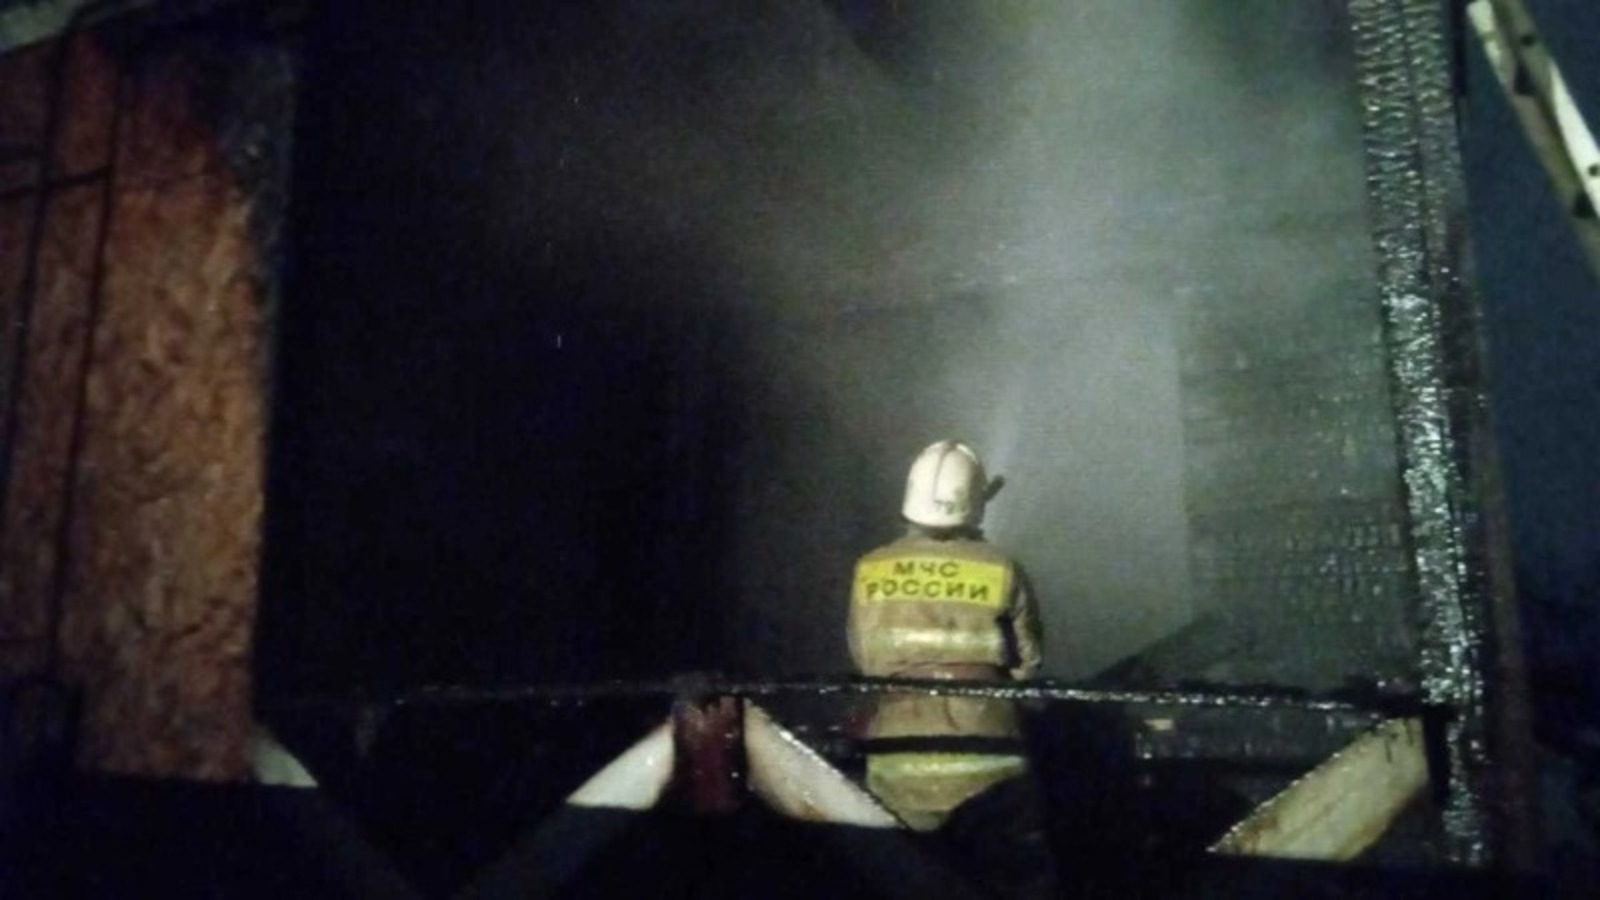 МЧС сообщило подробности пожара в Иглино, в котором пострадал ребенок